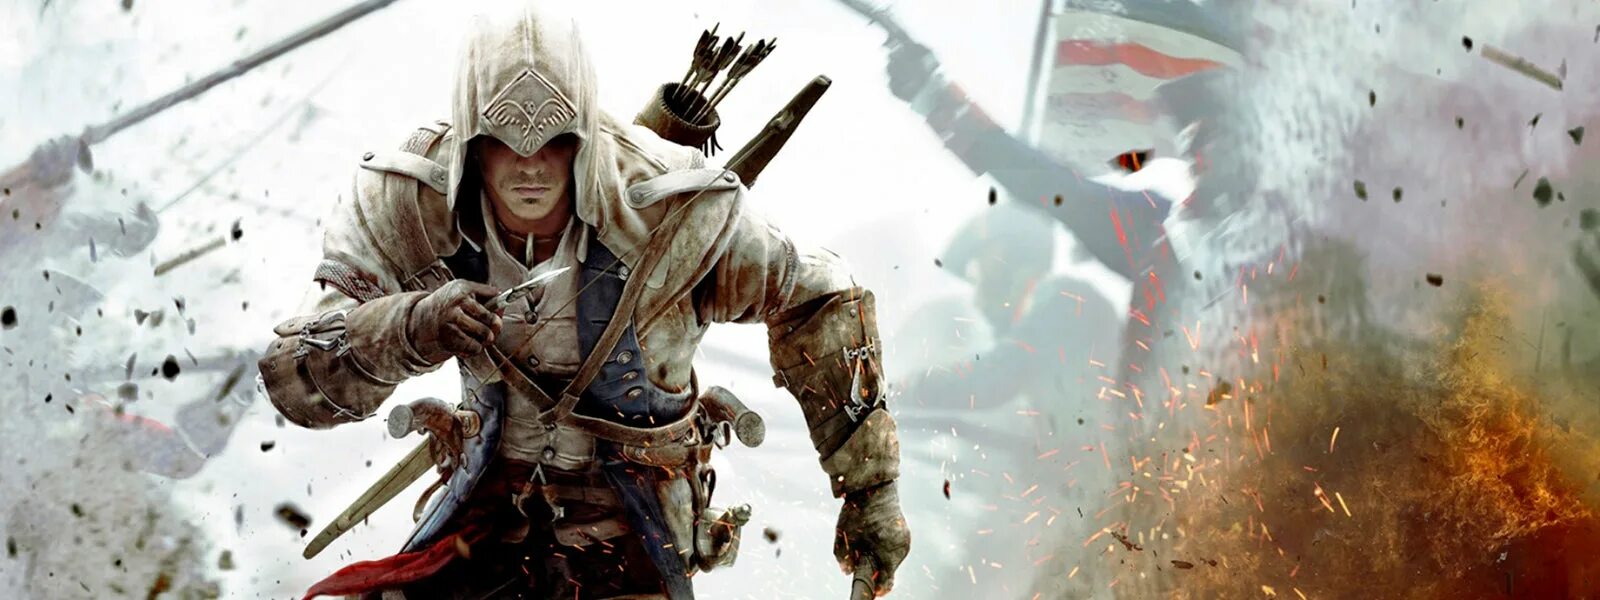 Включи крид 3. Assassin's Creed 3 Remastered. Ассасин Крид 3 Ремастеред. Assassin’s Creed III – 2012. Assassins Creed 3 ремастер.